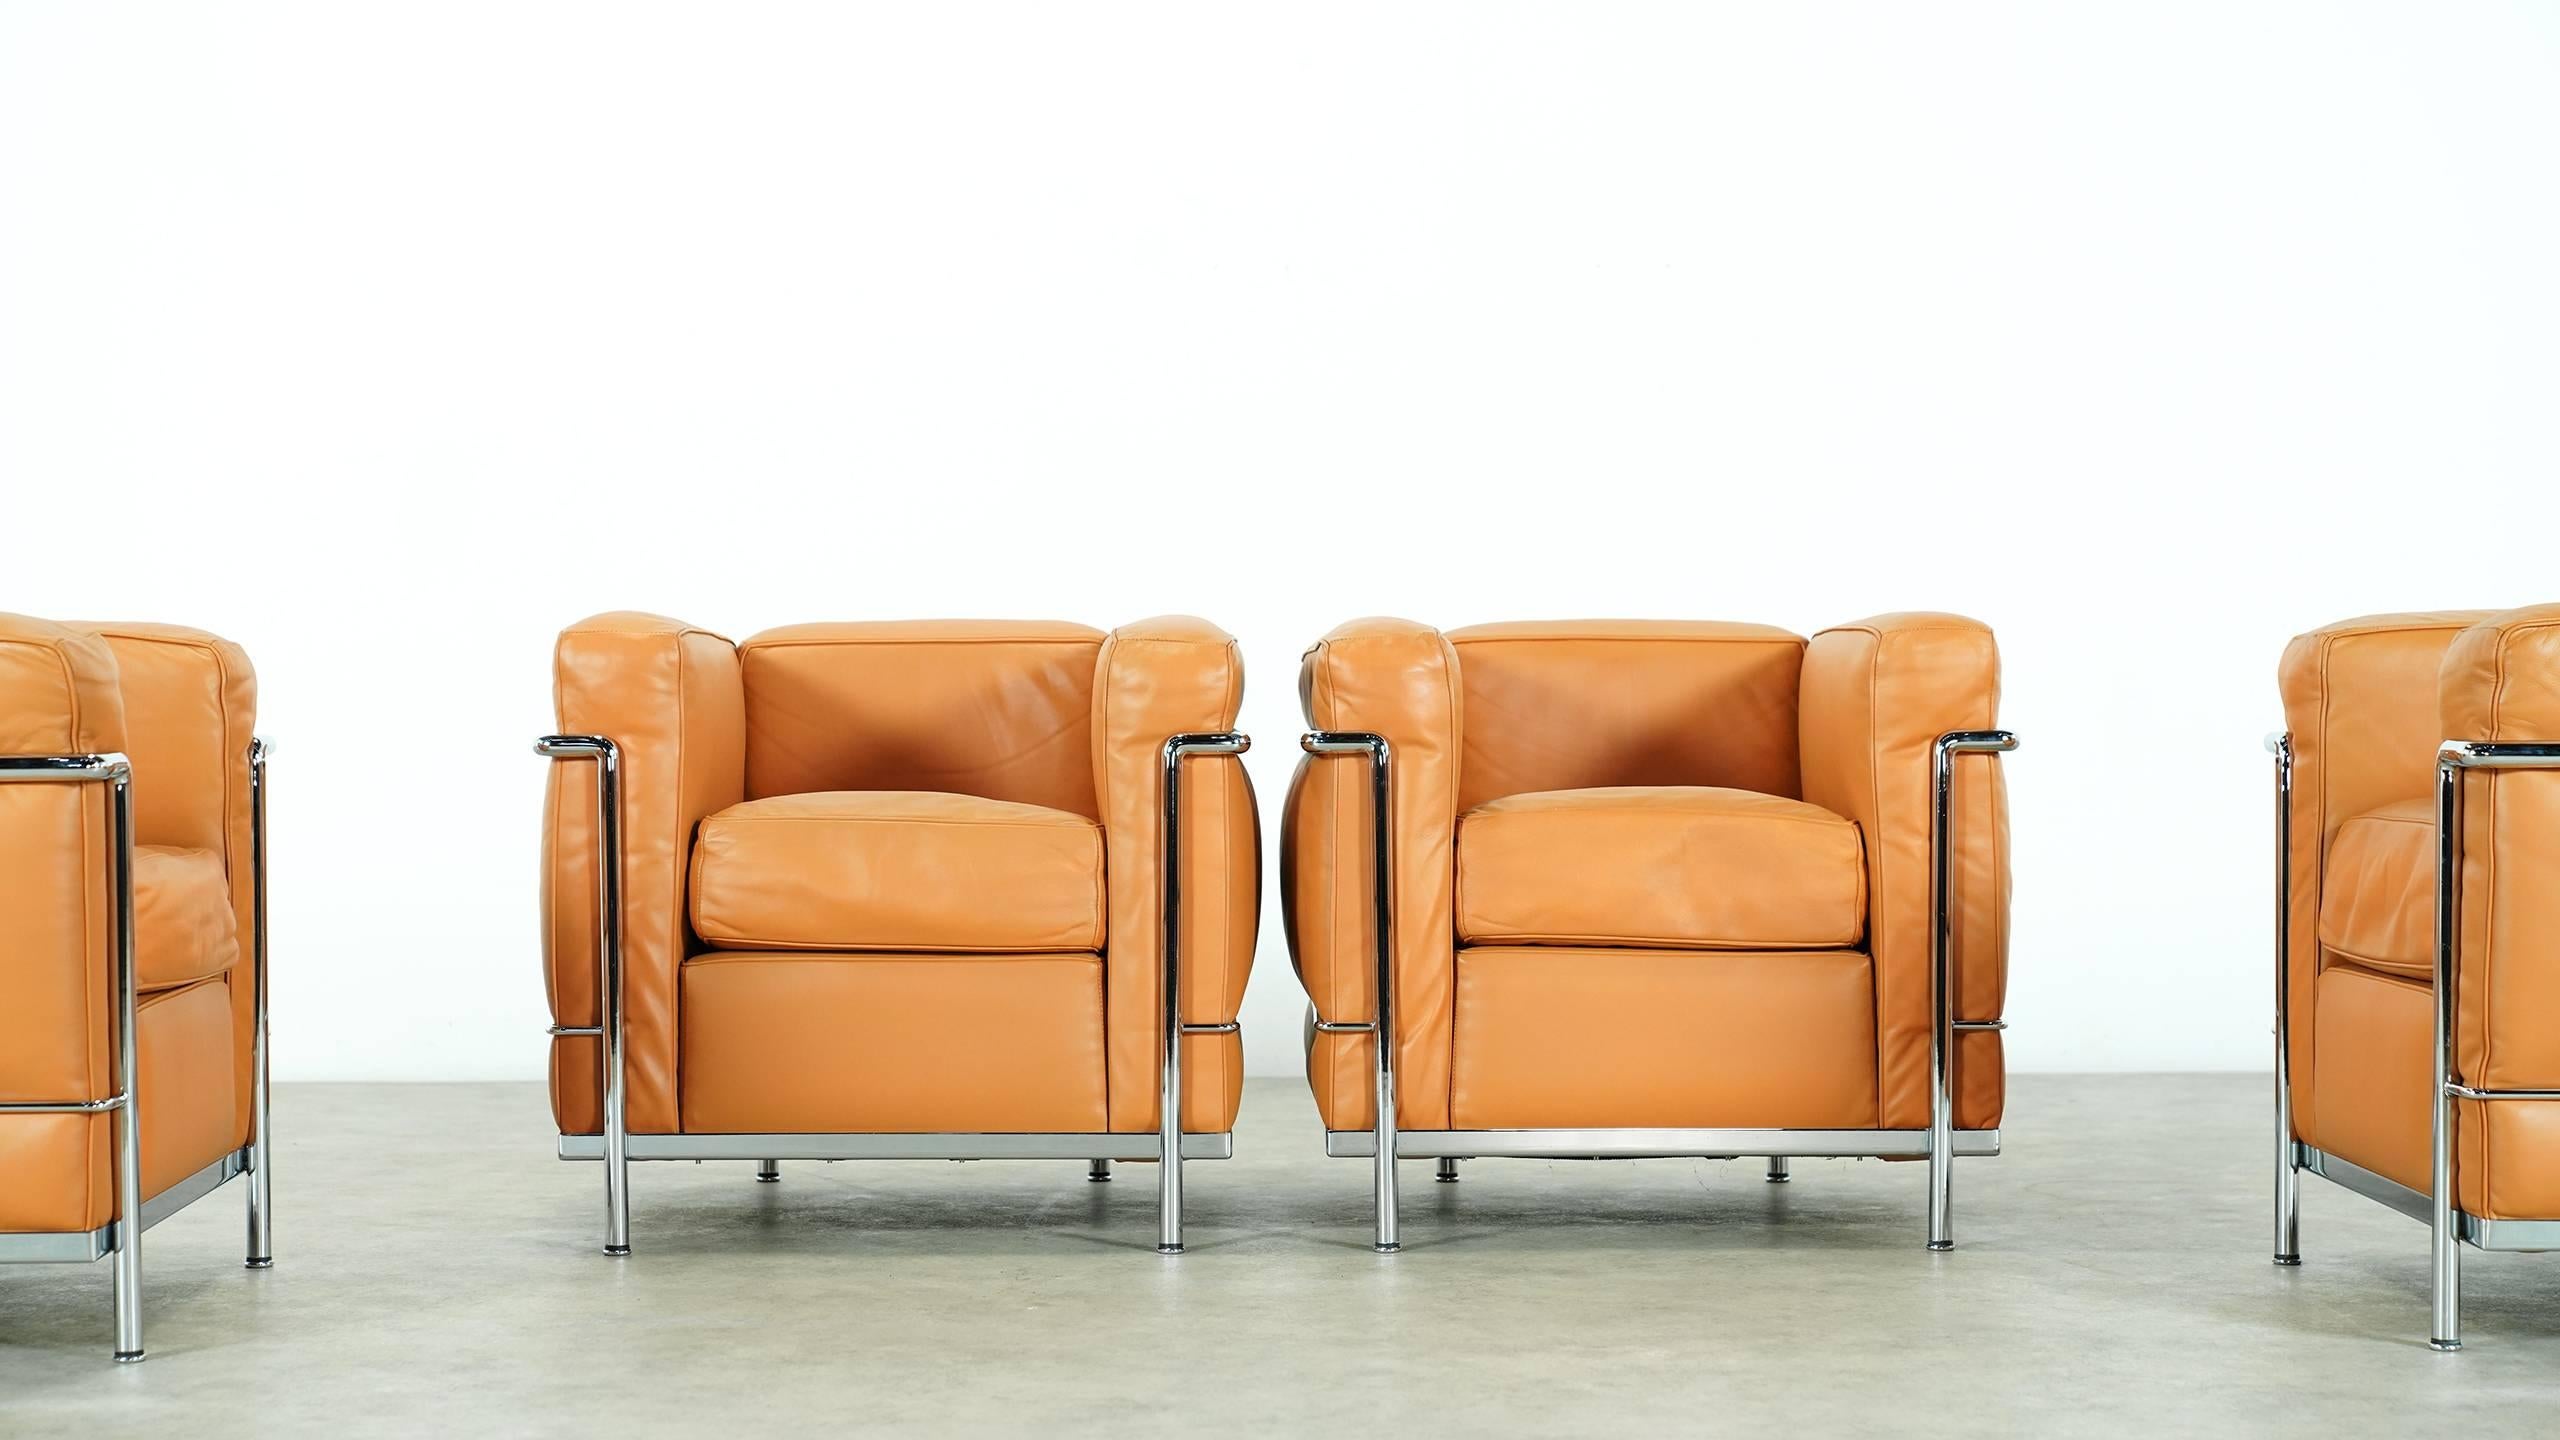 Satz von zwei LC2 Lounge Chairs:: entworfen von Le Corbusier:: hergestellt von Cassina. 

Gestempelt und graviert:: siehe Fotos - cognacfarbenes Leder:: schöner Zustand!
Einige der bequemsten Sitzmöbel:: die Le Corbusier je entworfen hat 
 